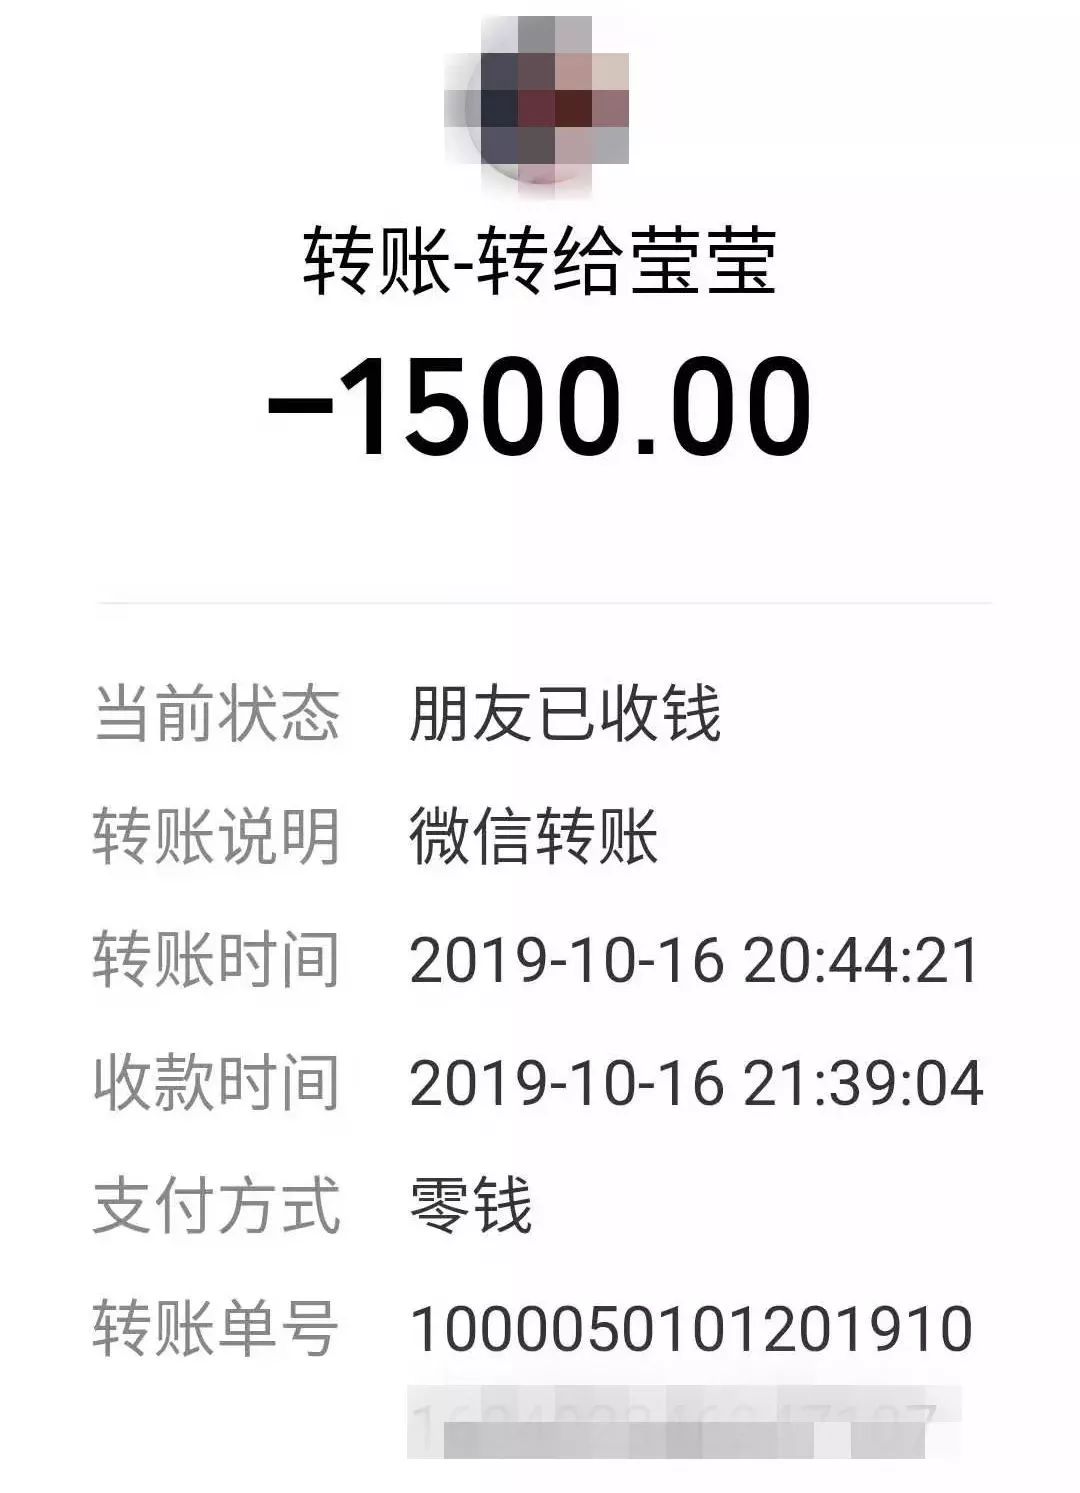 被微信拉黑罗先生向张雨莹转账20000余元后2019年10月中旬她却把罗